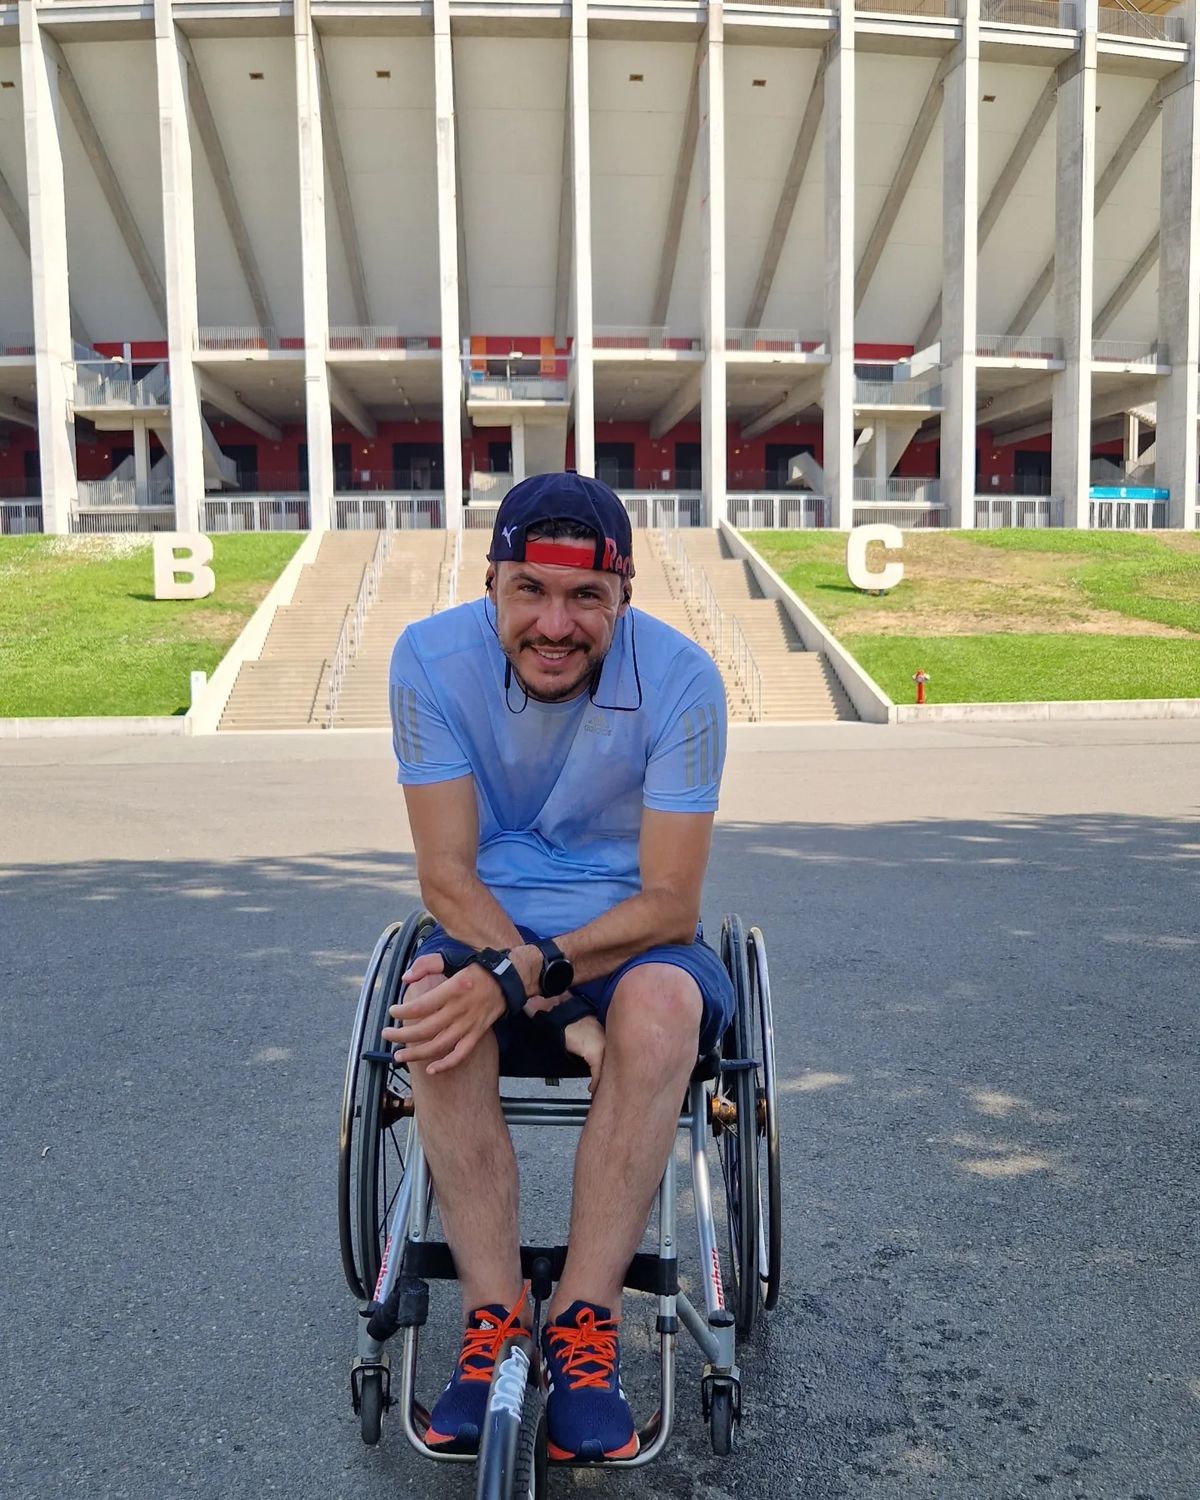 Sportivul George Baltă a fost părăsit de prieteni, după ce a rămas paralizat: „Îmi plângeau de milă! N-am nevoie de oamenii ăștia, să nu-i mai văd!”